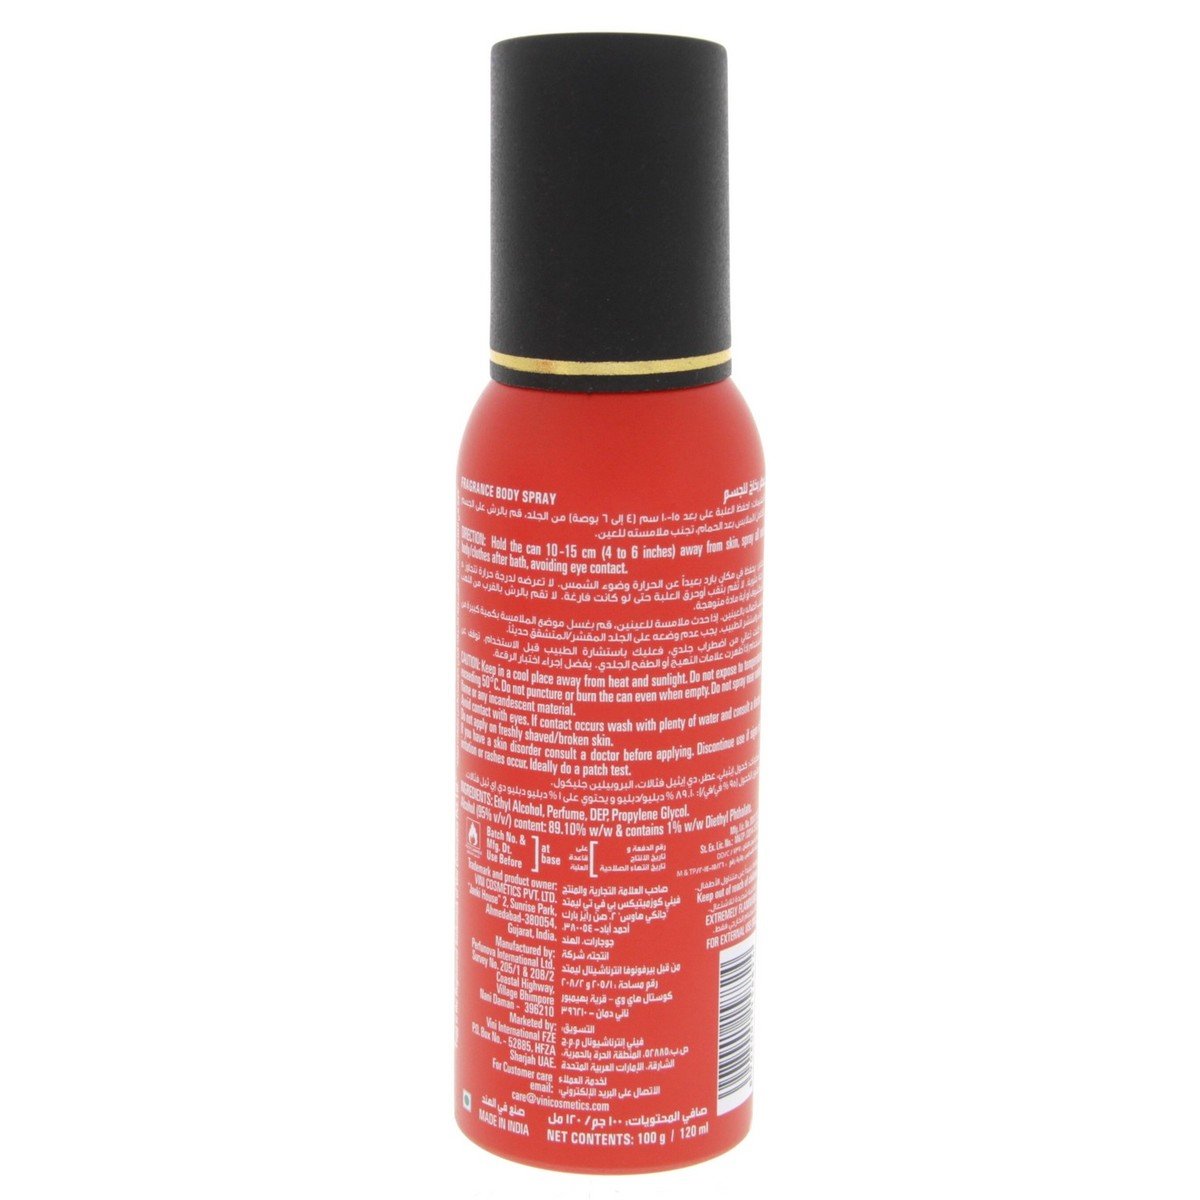 Fogg Magnetic Deo Spray For Men 120ml x 2pcs